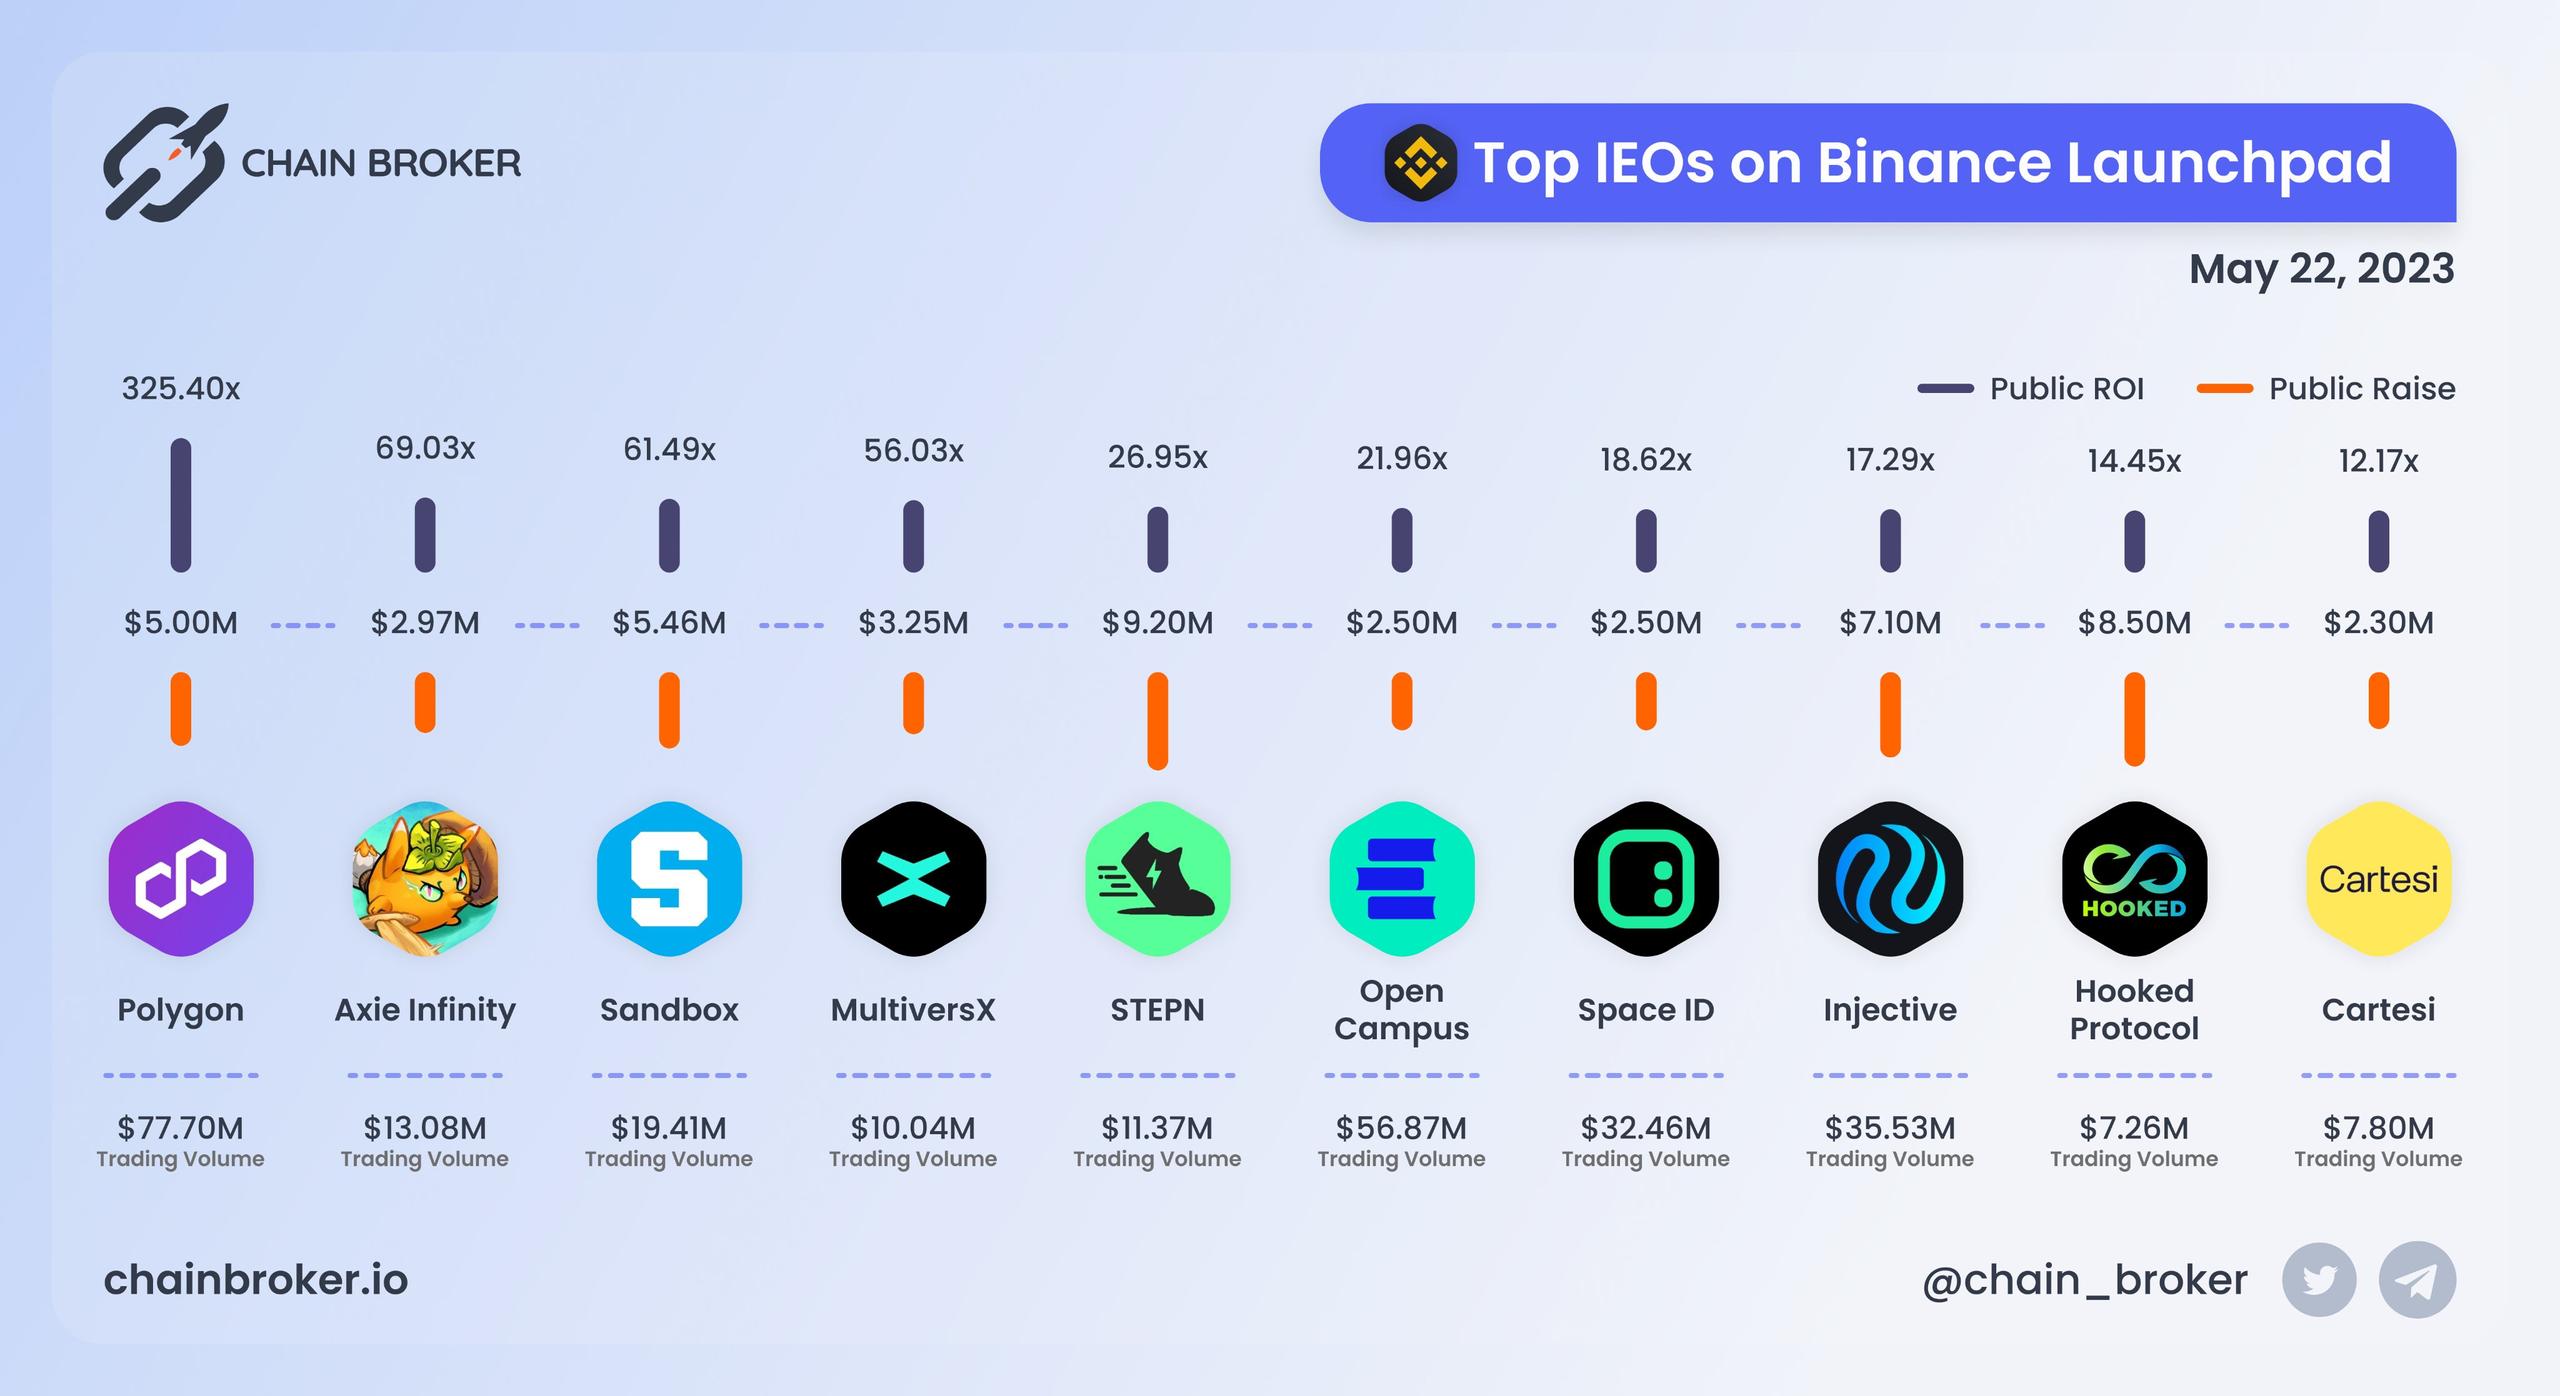 Top IEOs on Binance Launchpad